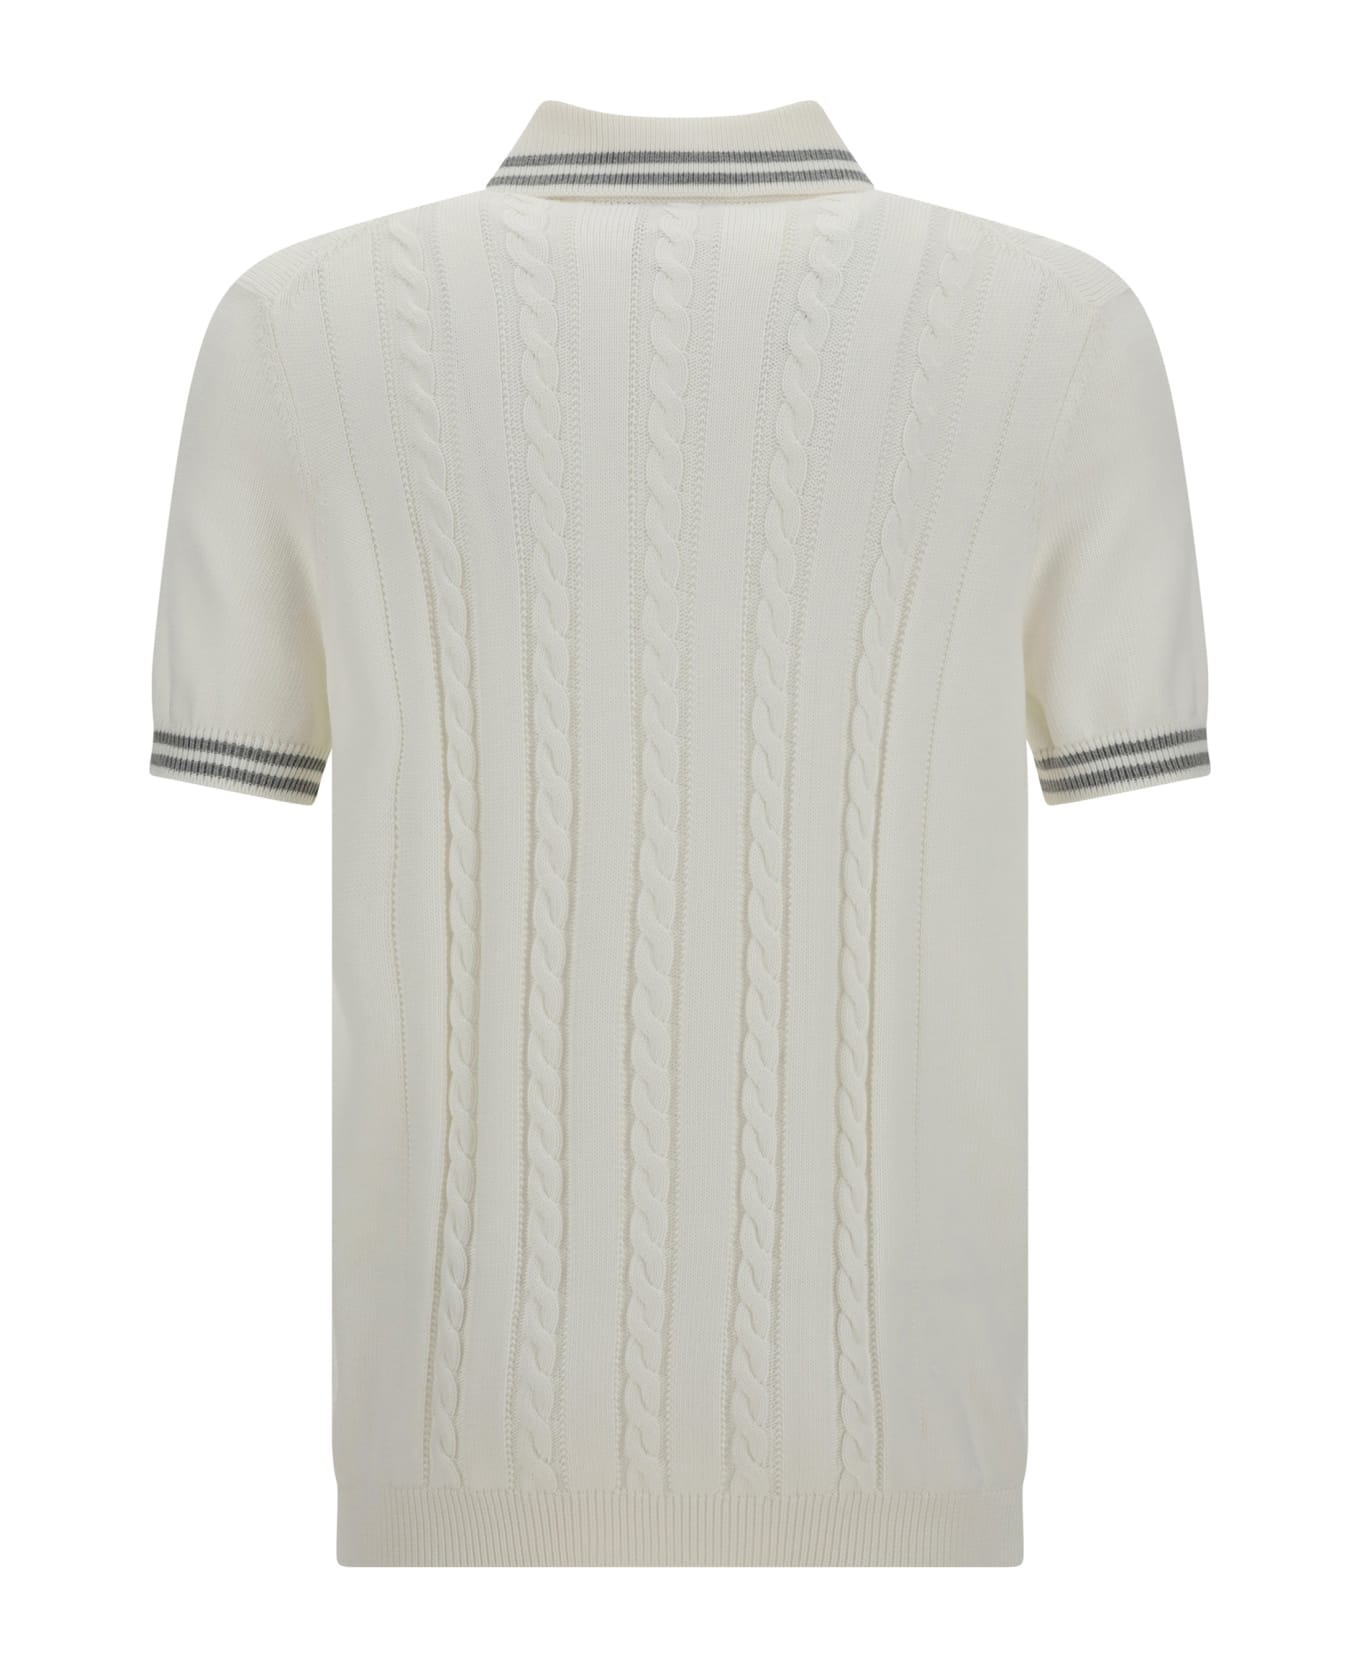 Brunello Cucinelli fastening Polo Shirt - Panama+grigio Chiaro+bianco